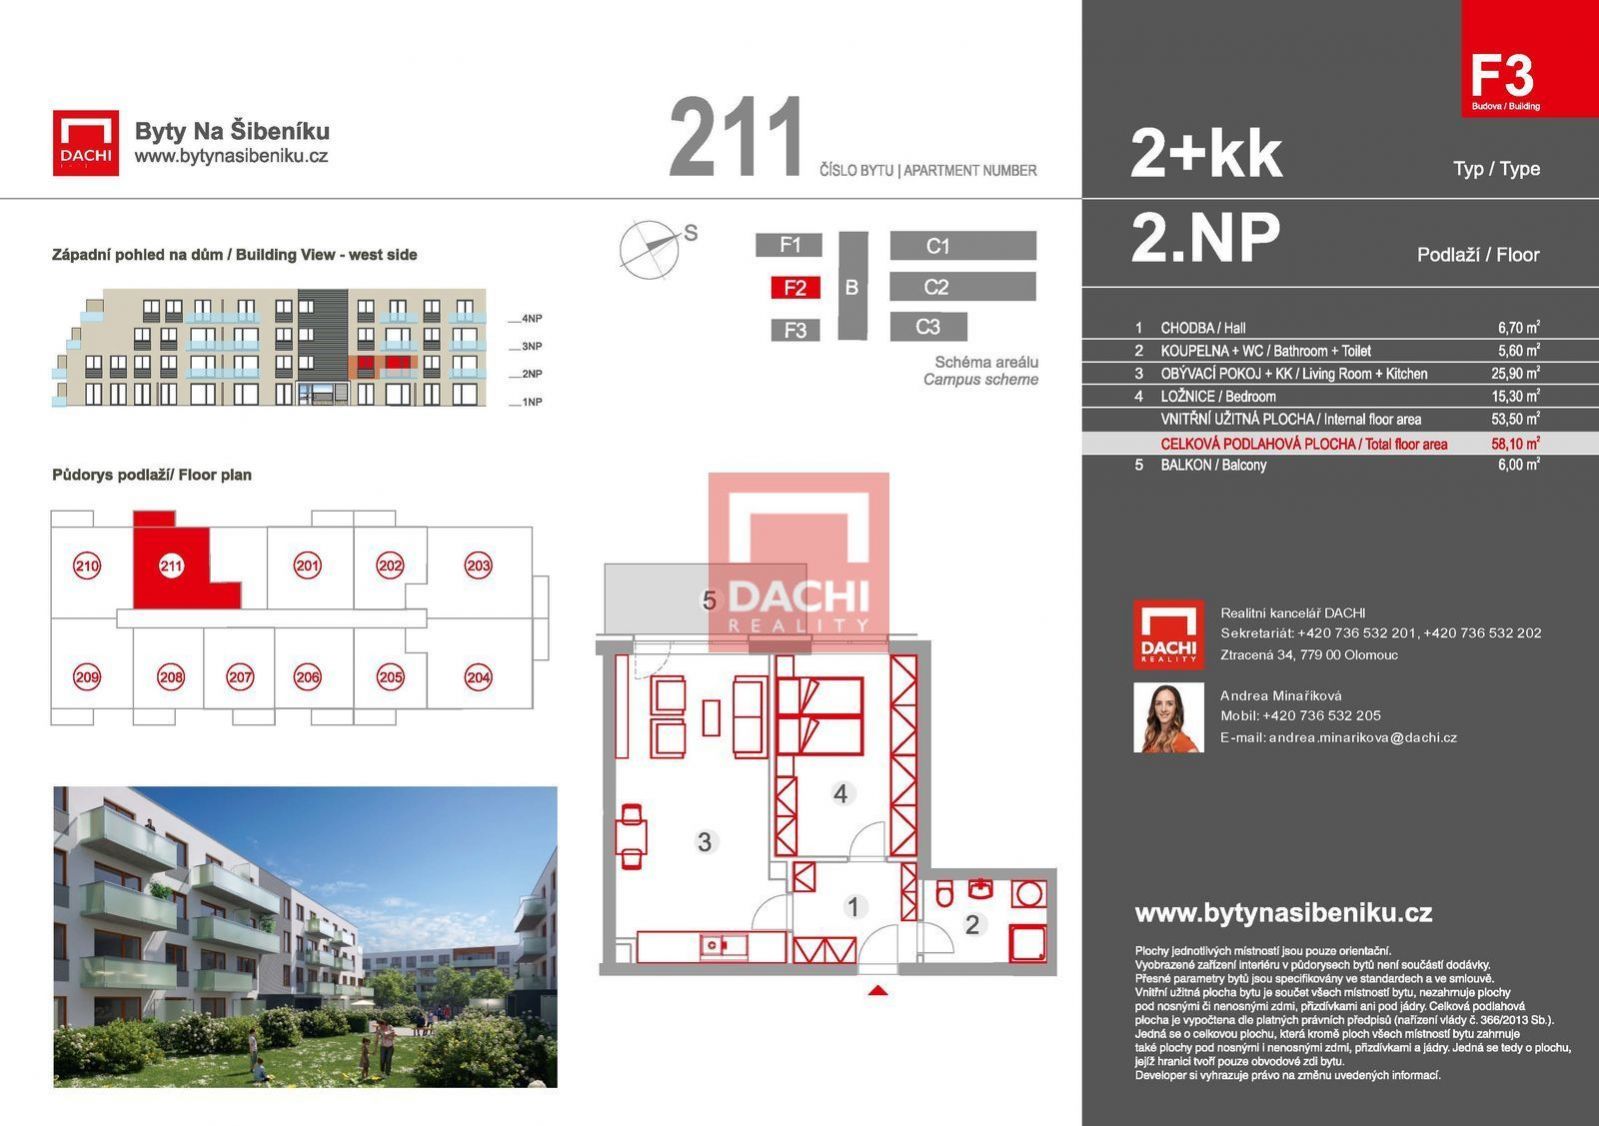 Prodej novostavby bytu F3.211  2+kk 58,10m s balkonem 6,0m, Olomouc, Byty Na Šibeníku II.etapa, obrázek č. 3